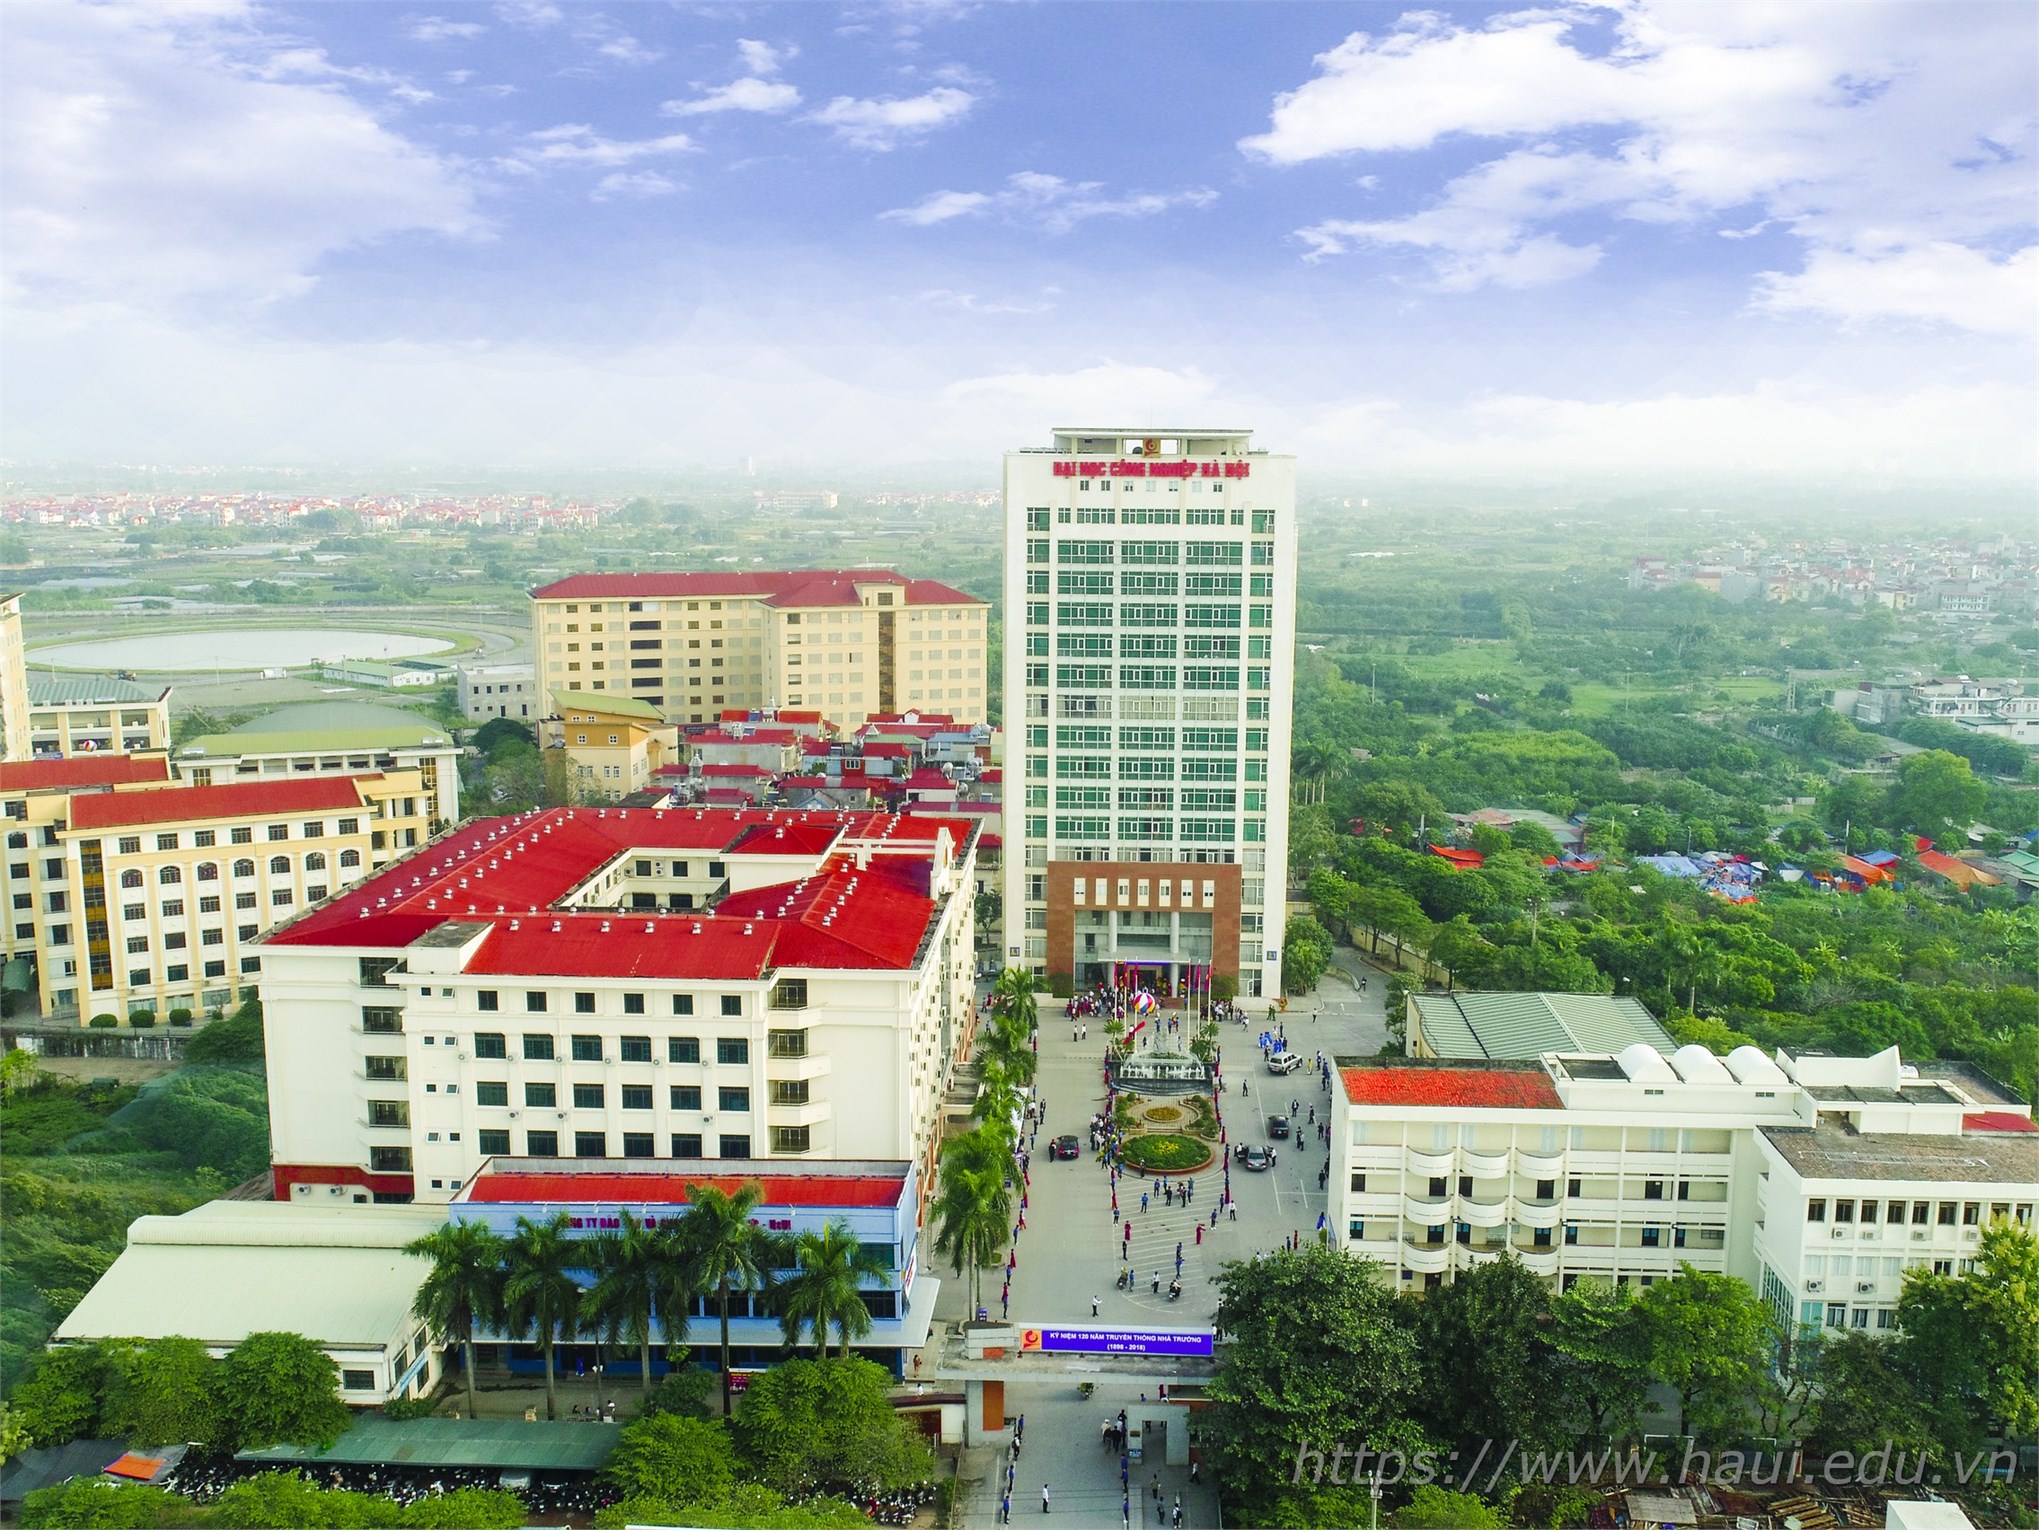 103.119 nguyện vọng đăng ký xét tuyển vào Đại học Công nghiệp Hà Nội năm 2019